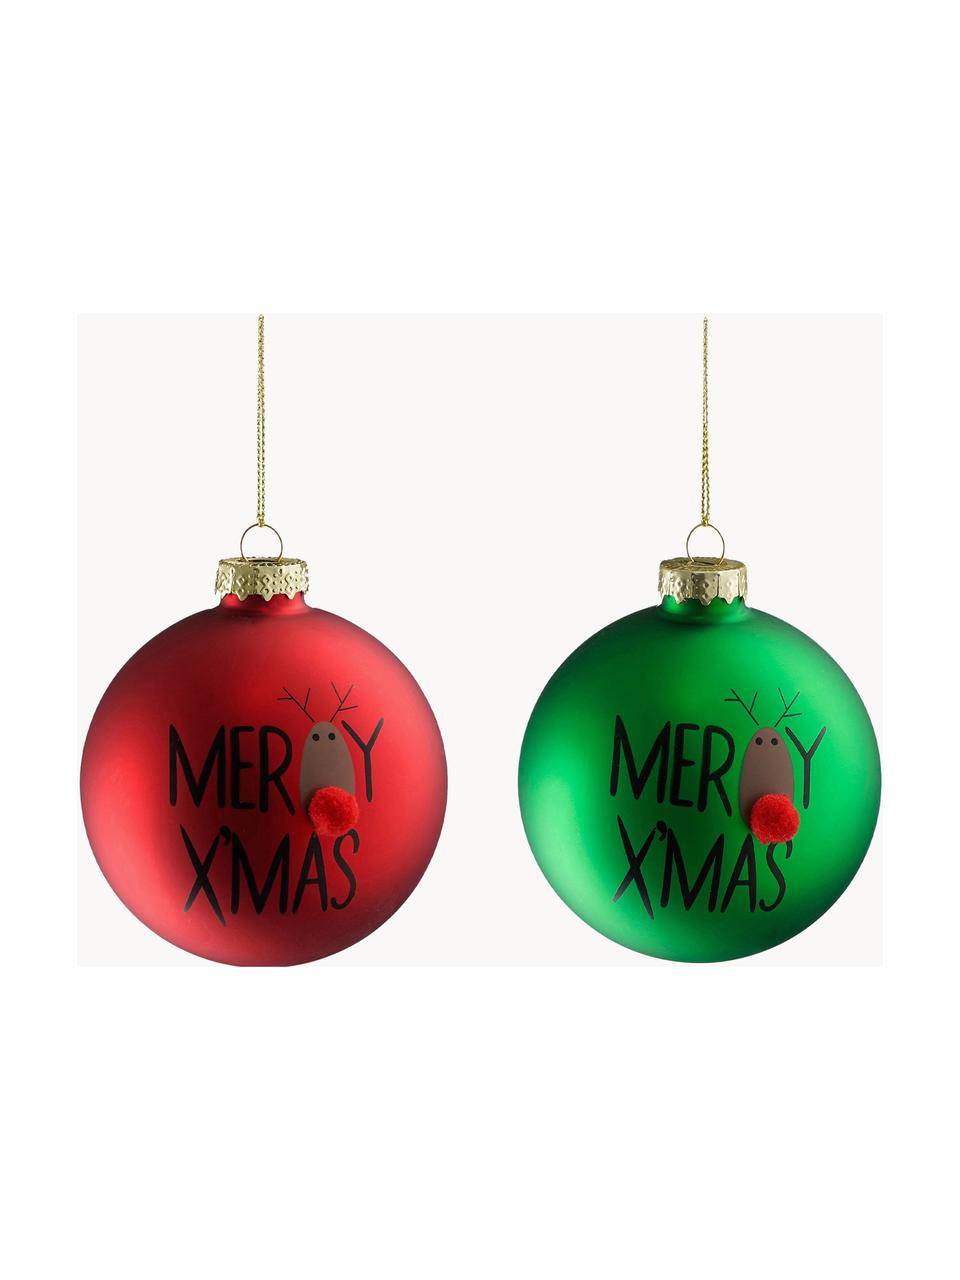 Sada vánočních ozdob Merry Xmas, 12 dílů, Sklo, Červená, zelená, Ø 8 cm, V 8 cm